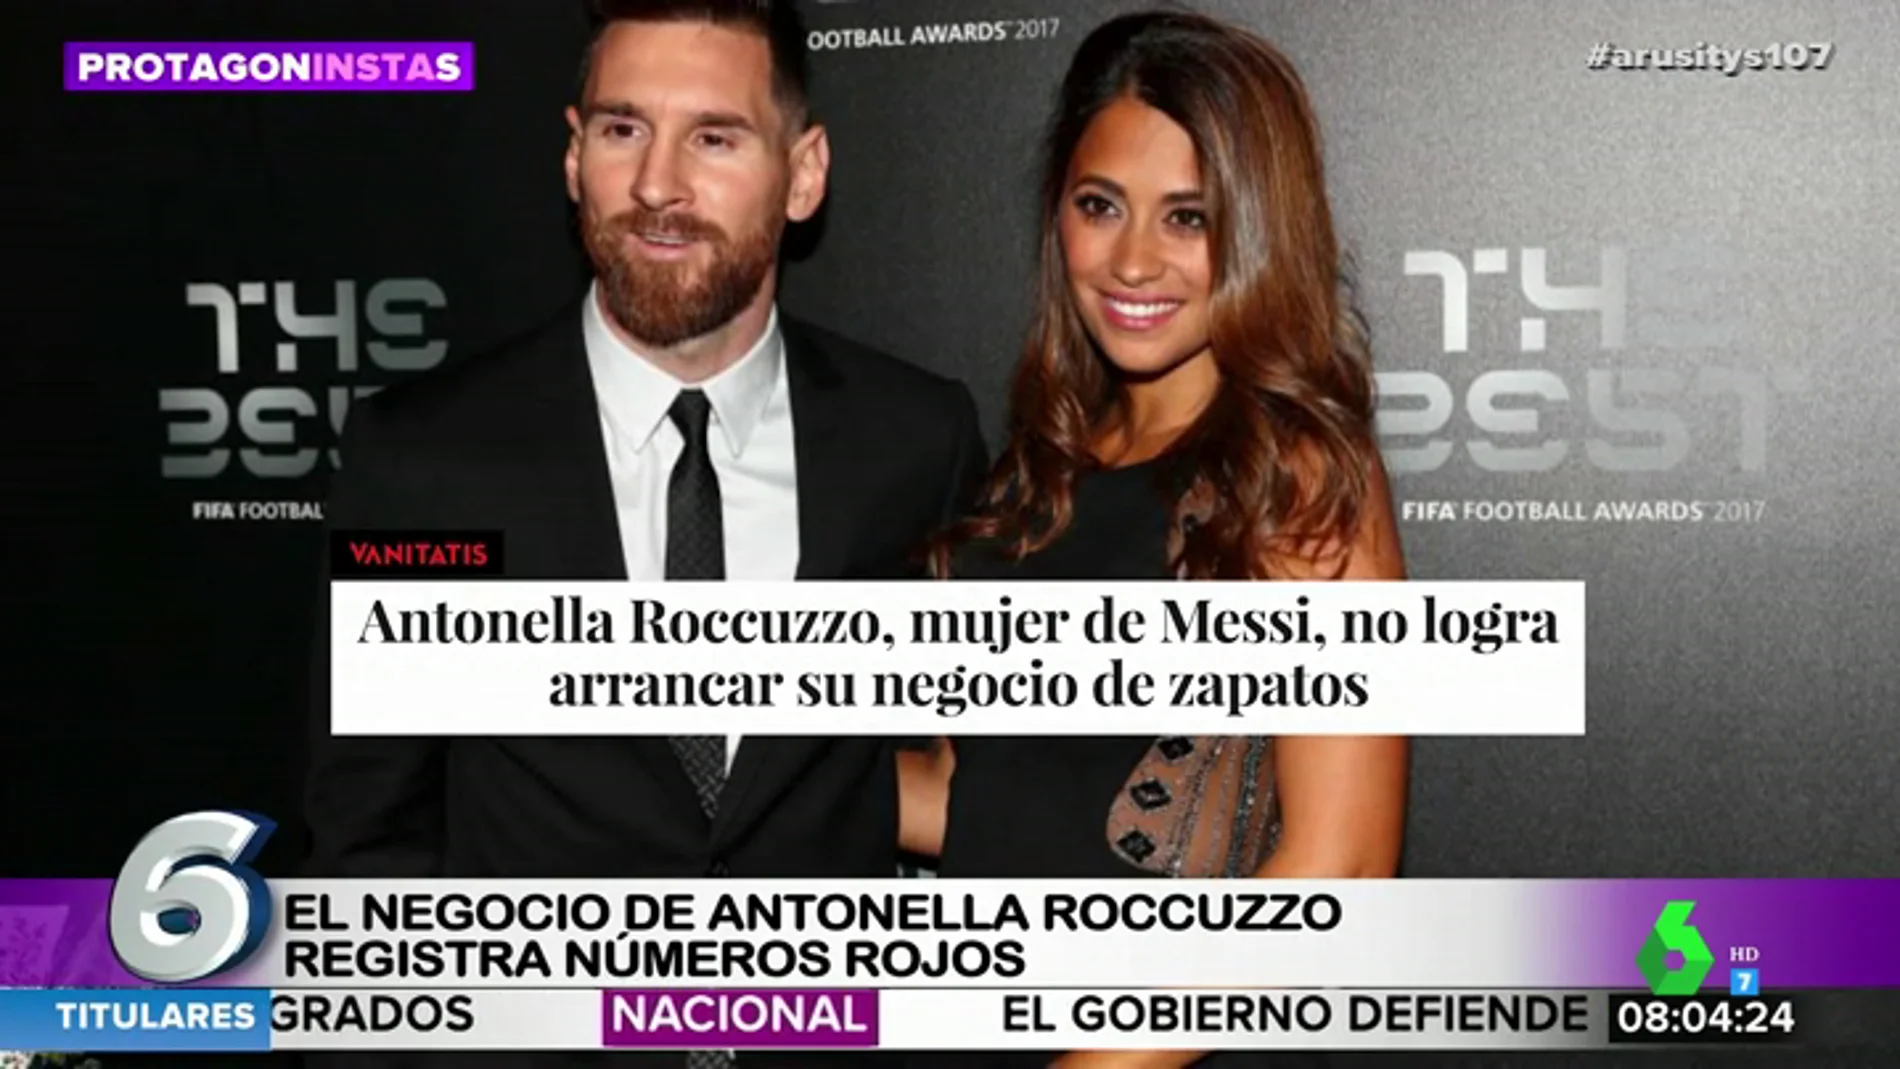 La 'crisis' económica de Leo Messi y Luis Suárez: así es el negocio de sus parejas que sufre pérdidas de miles de euros